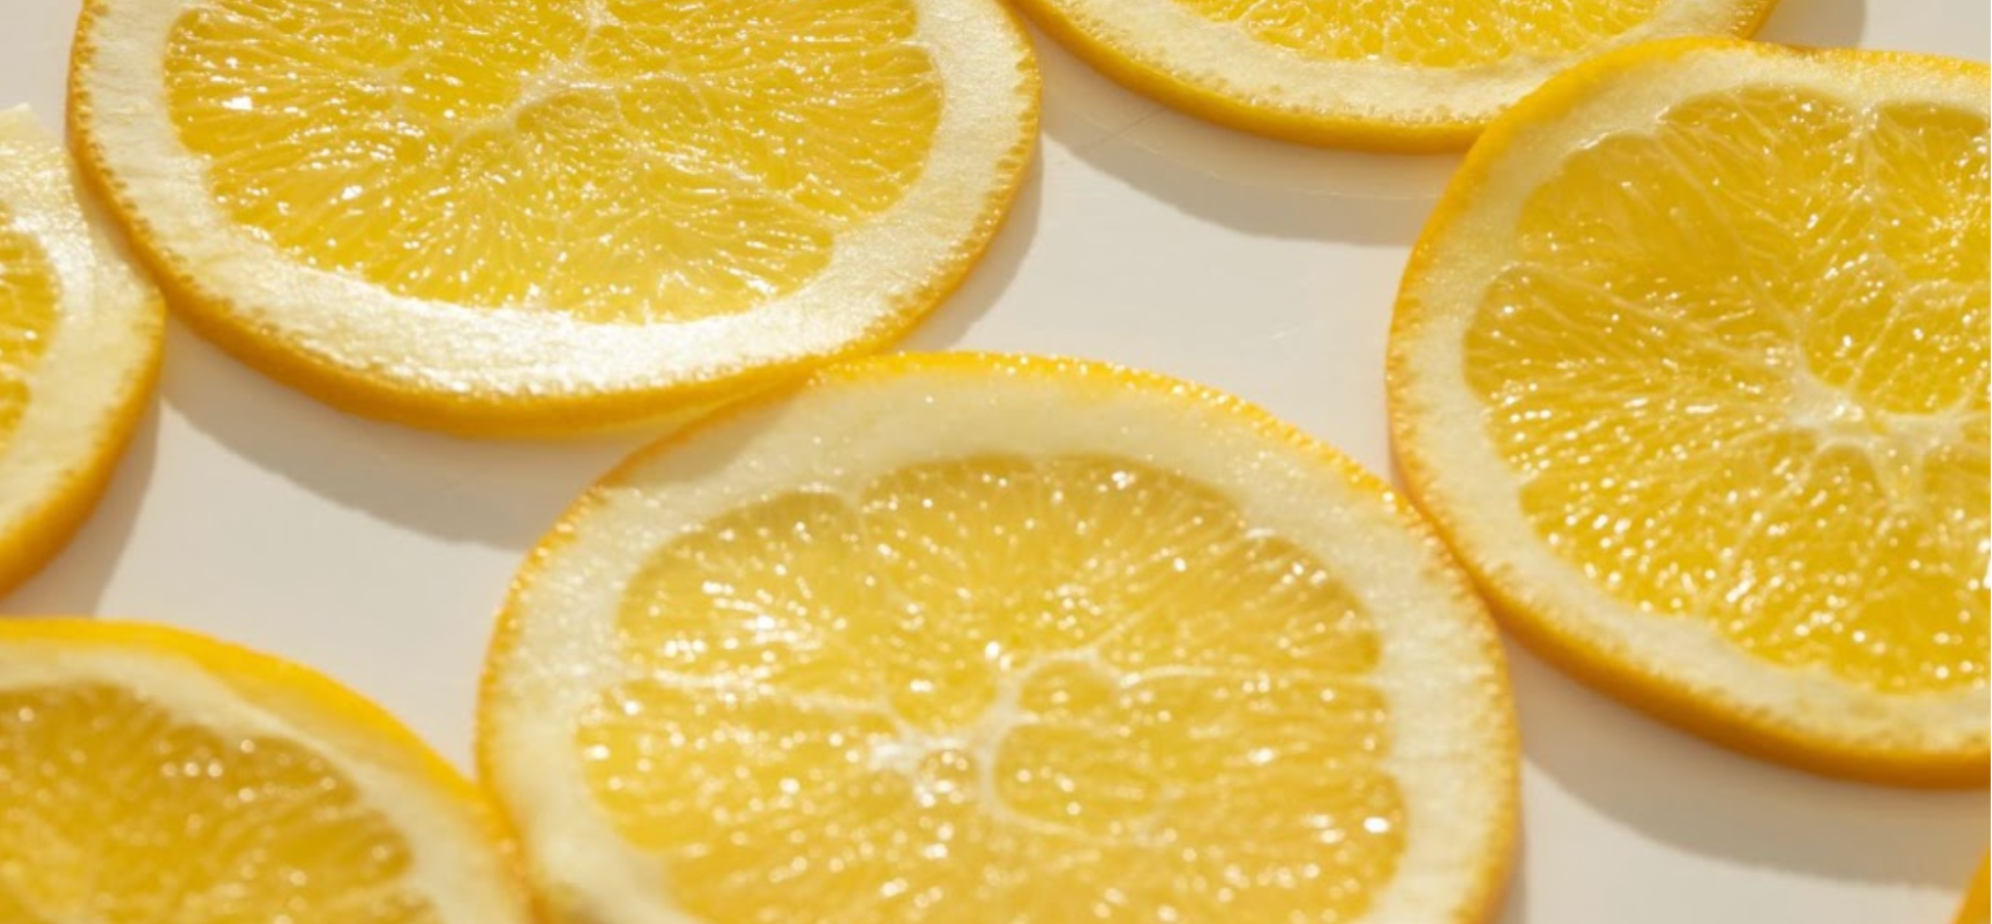 Lemon slices for vitamin C.